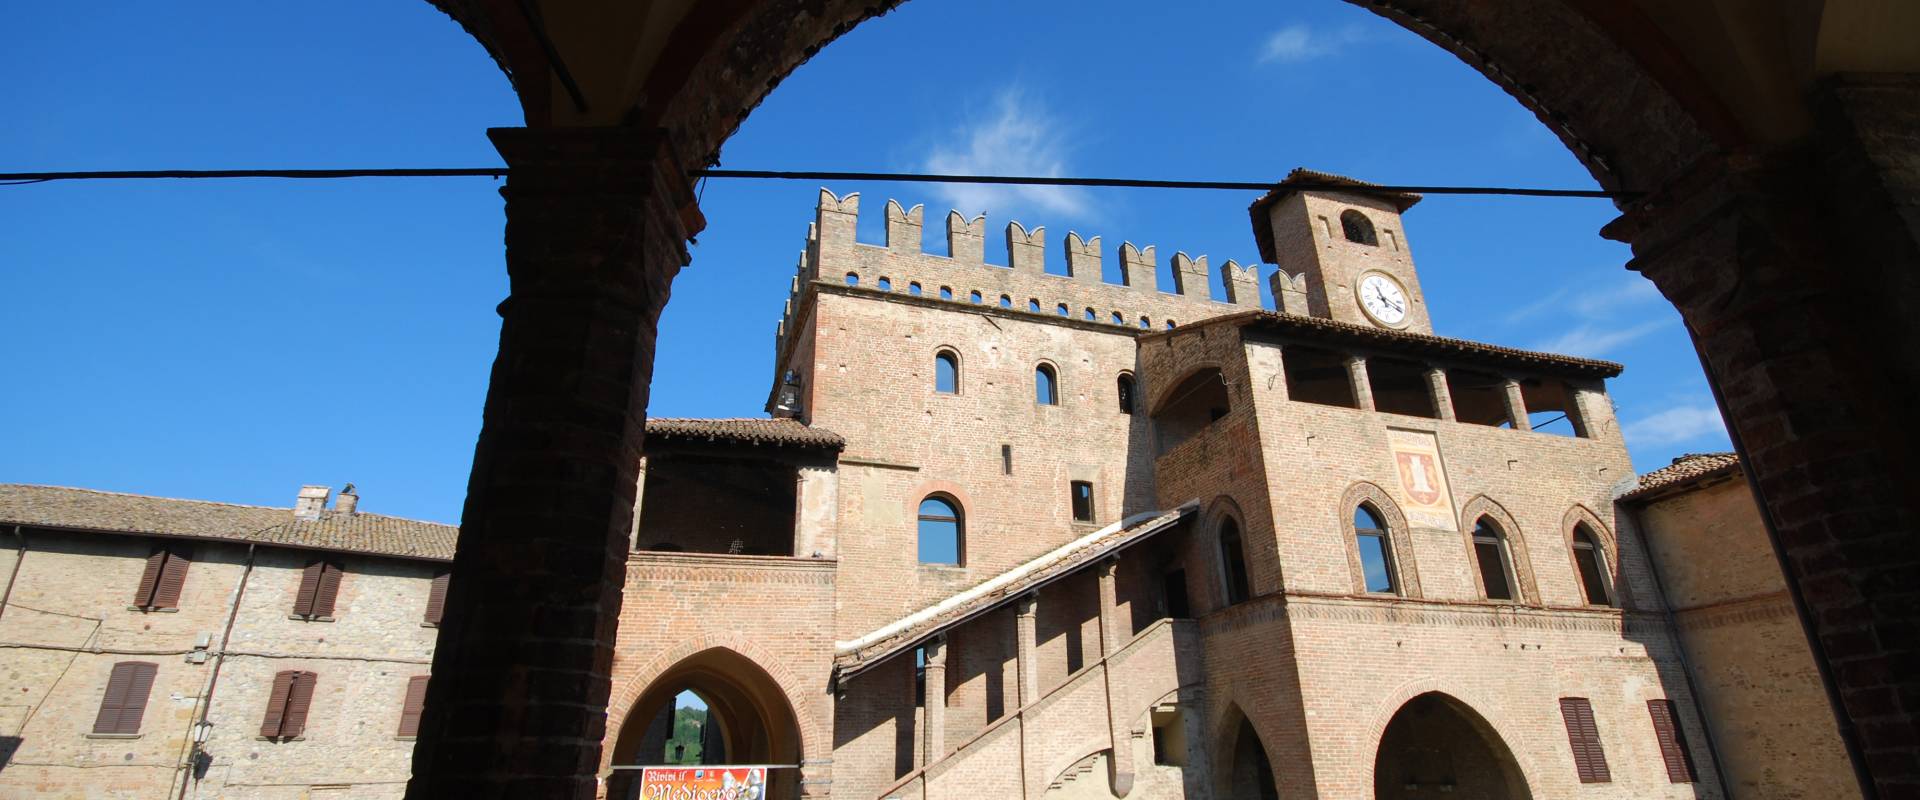 Castell'Arquato-Palazzo del Podestà foto di Massimo Telò